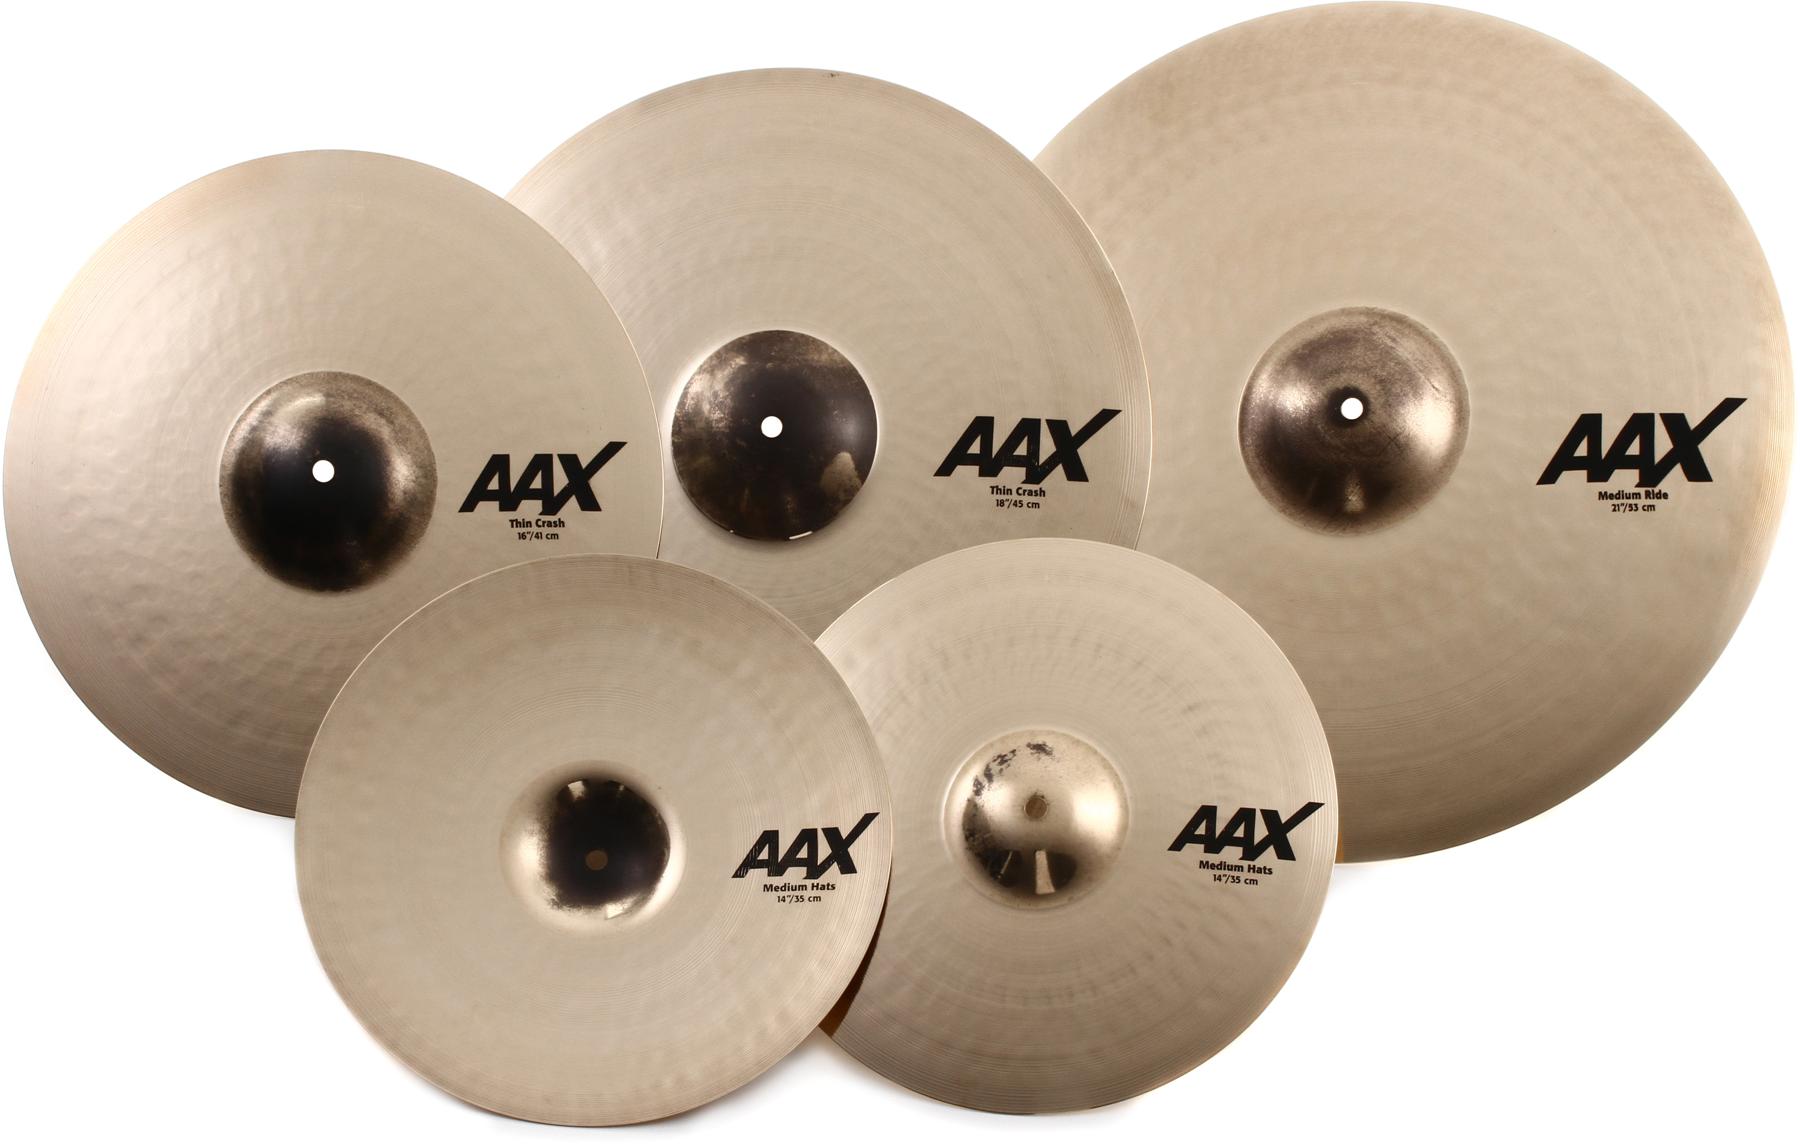 1. Sabian AAX Promo Cymbal Set